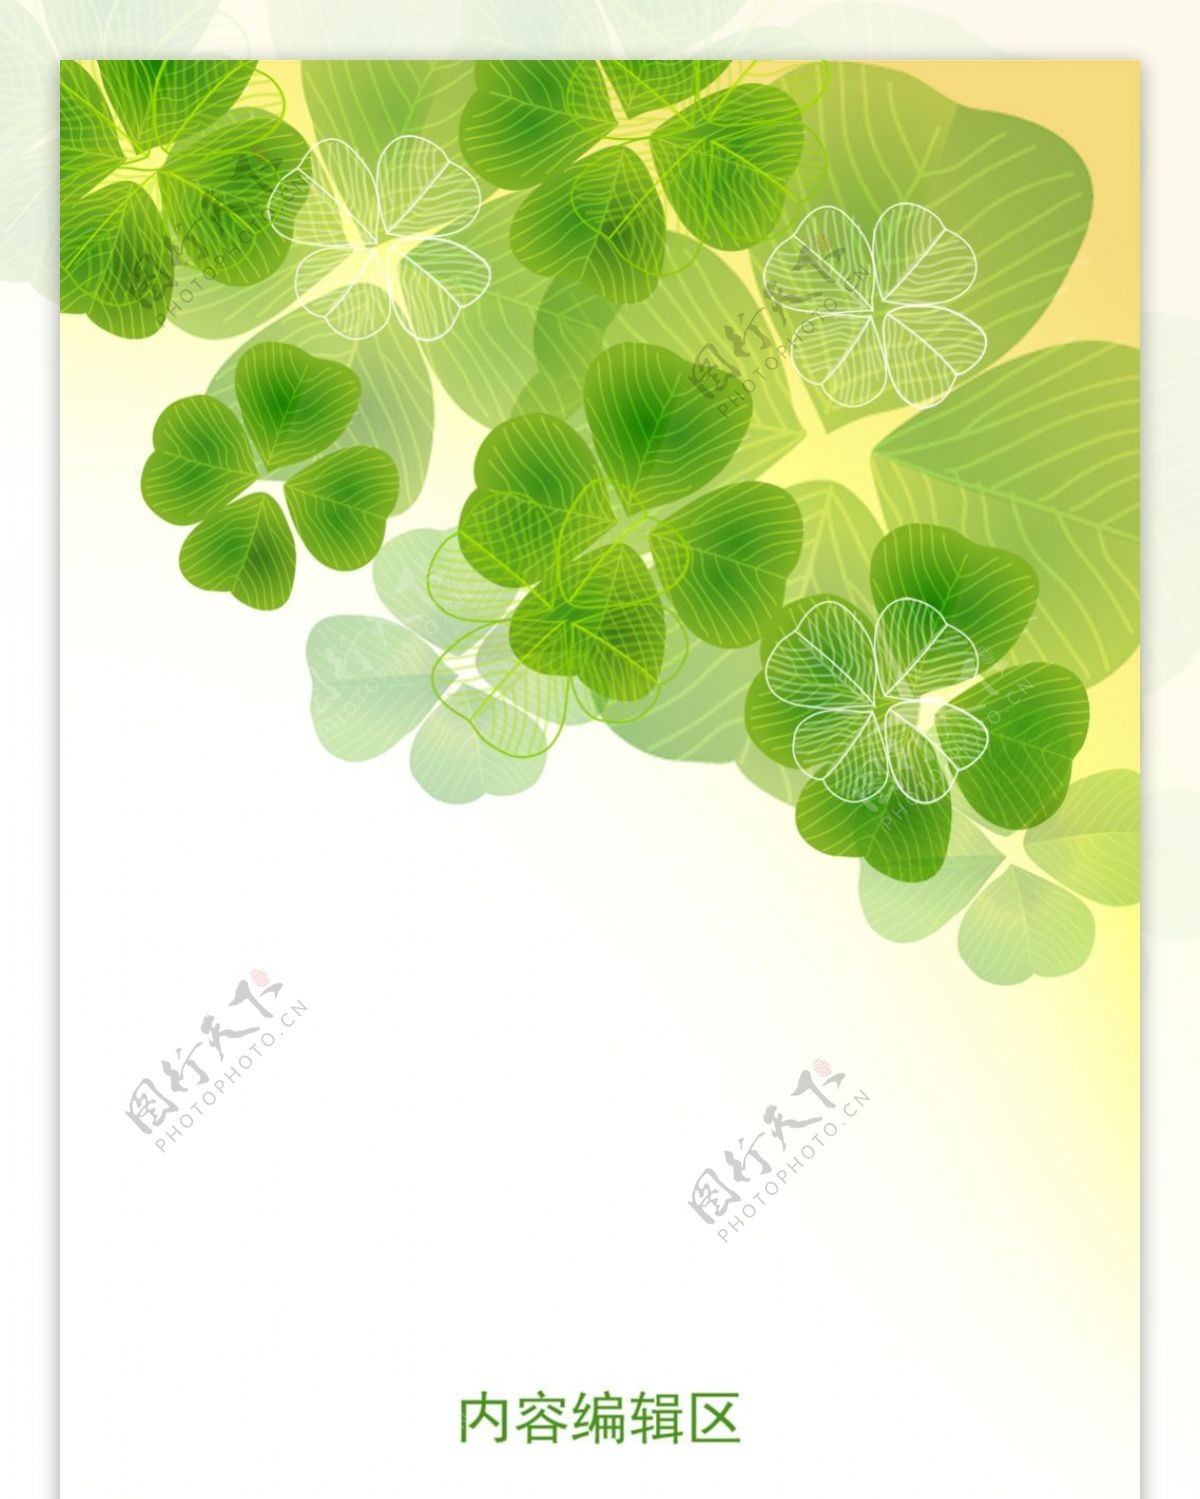 绿色幸运草展架设计模板背景素材海报画面